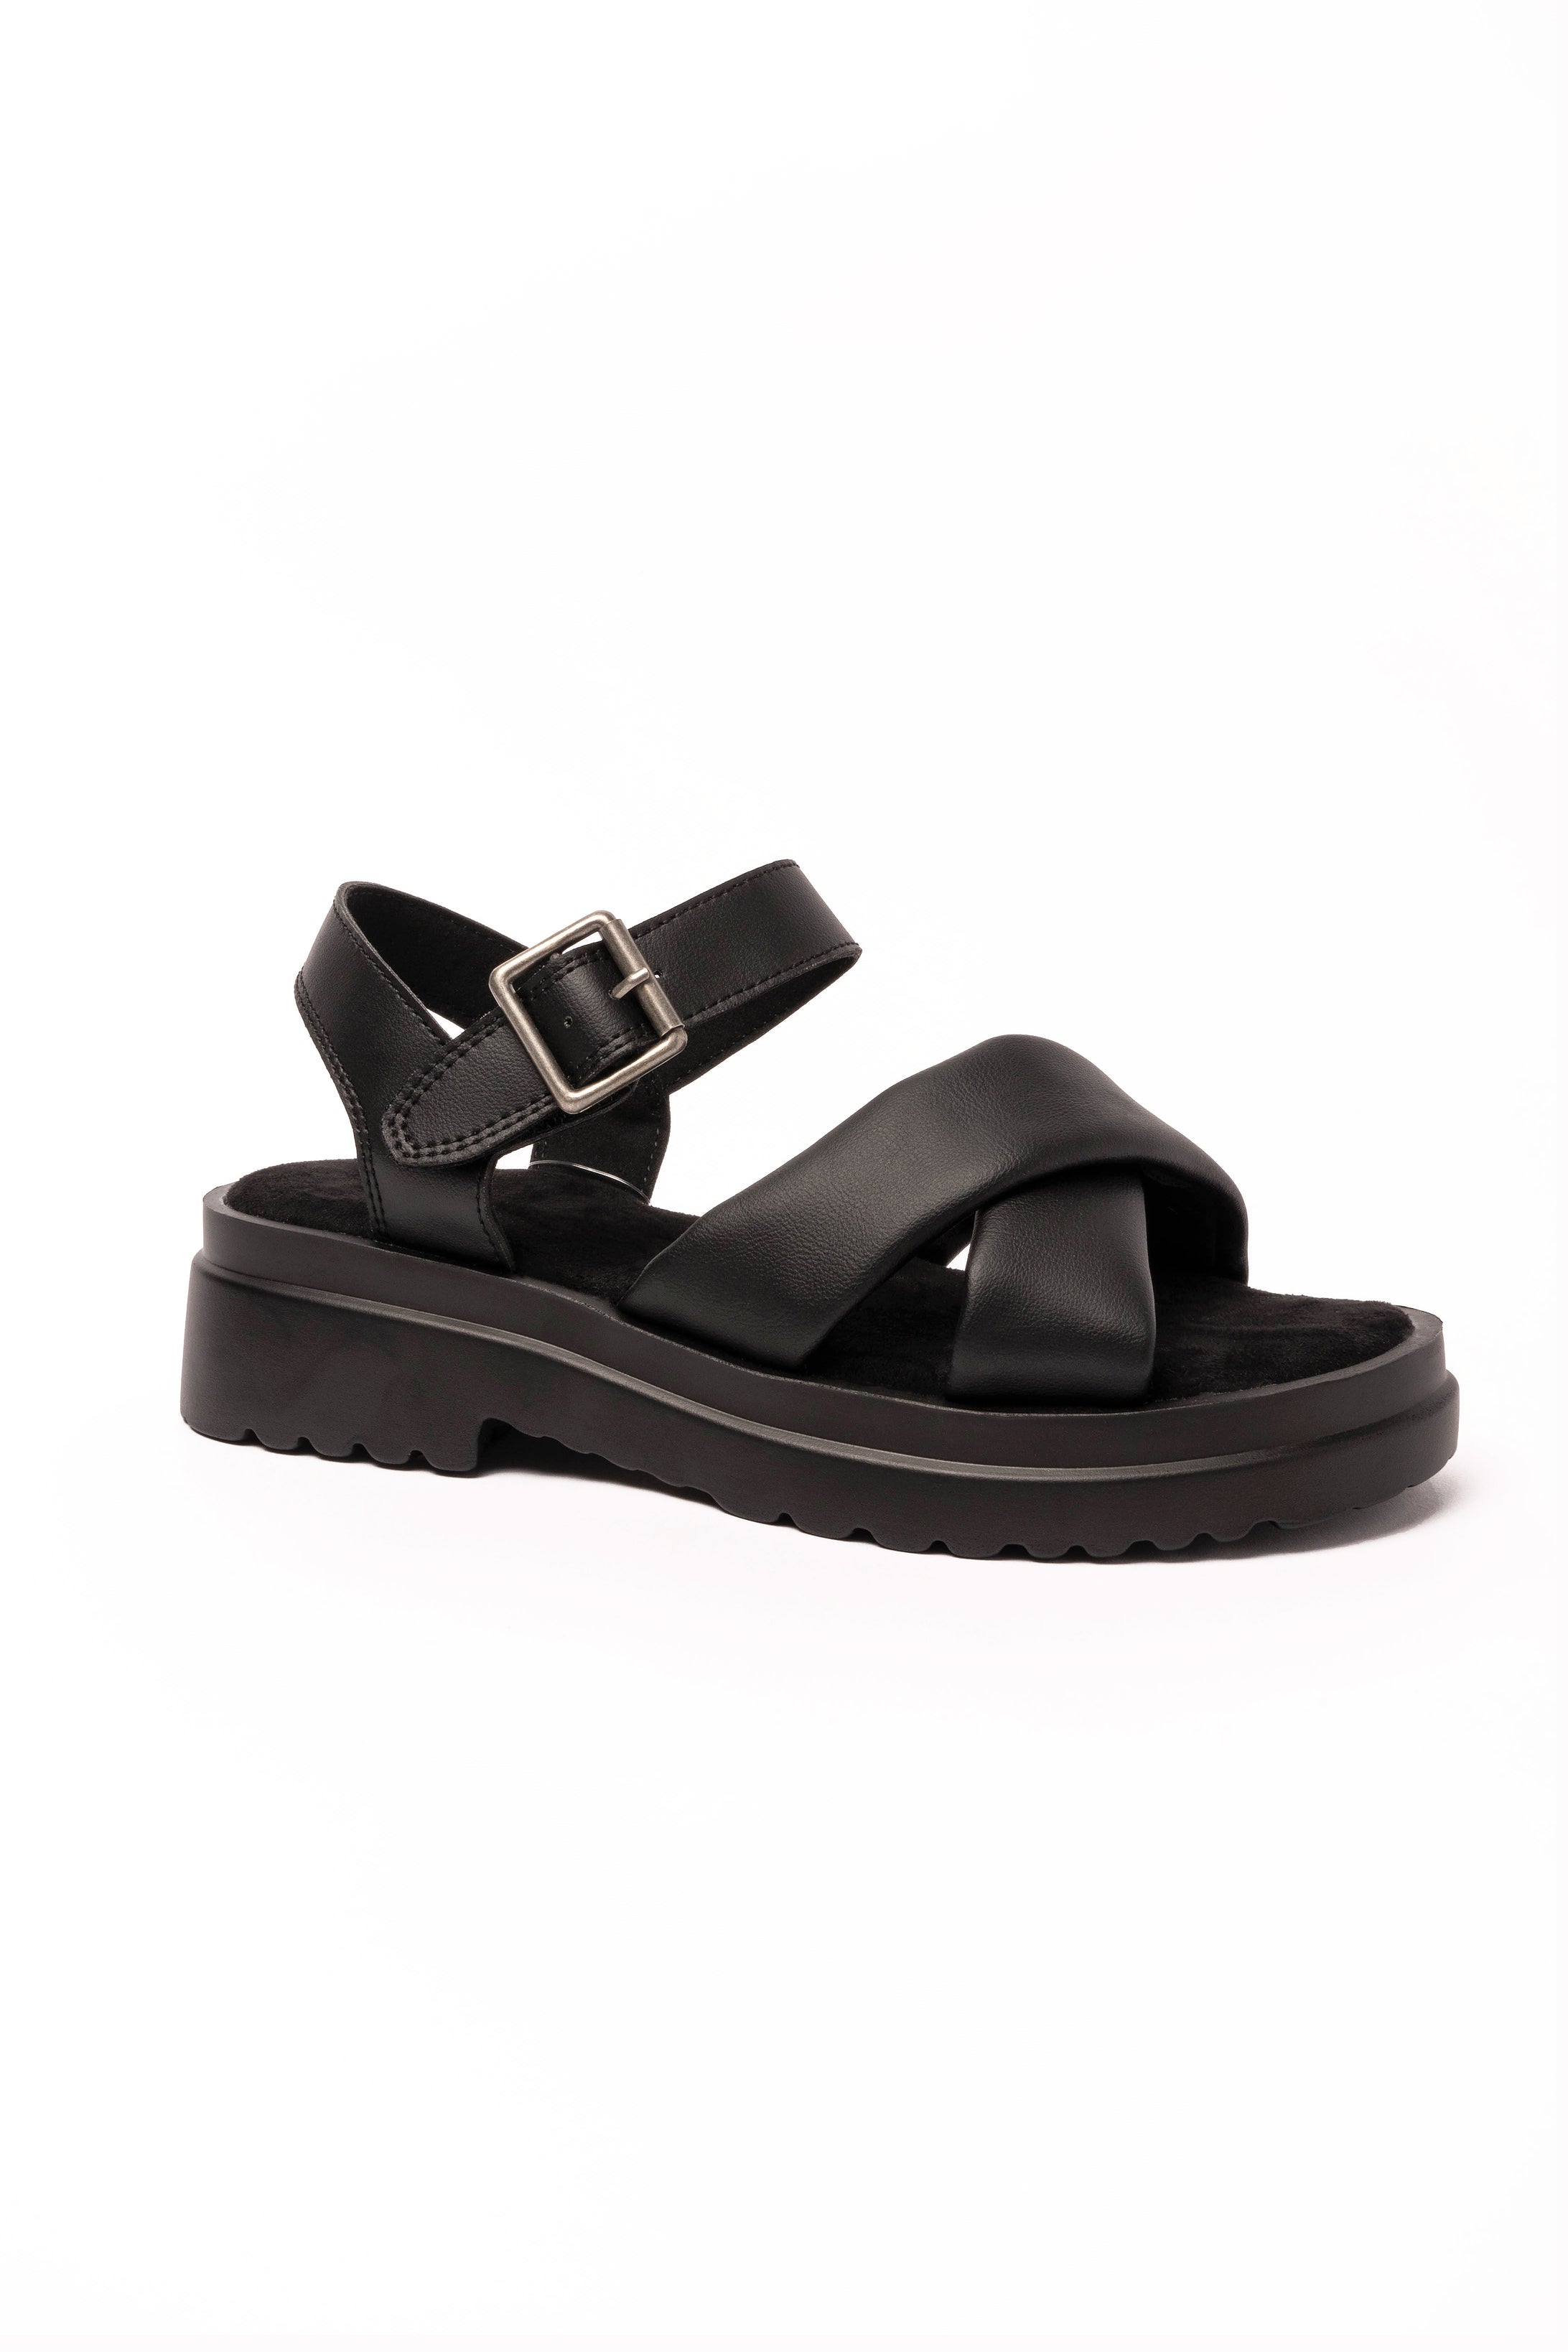 Clara gladiator platform sandals black – Dr Lightfoot Shoes